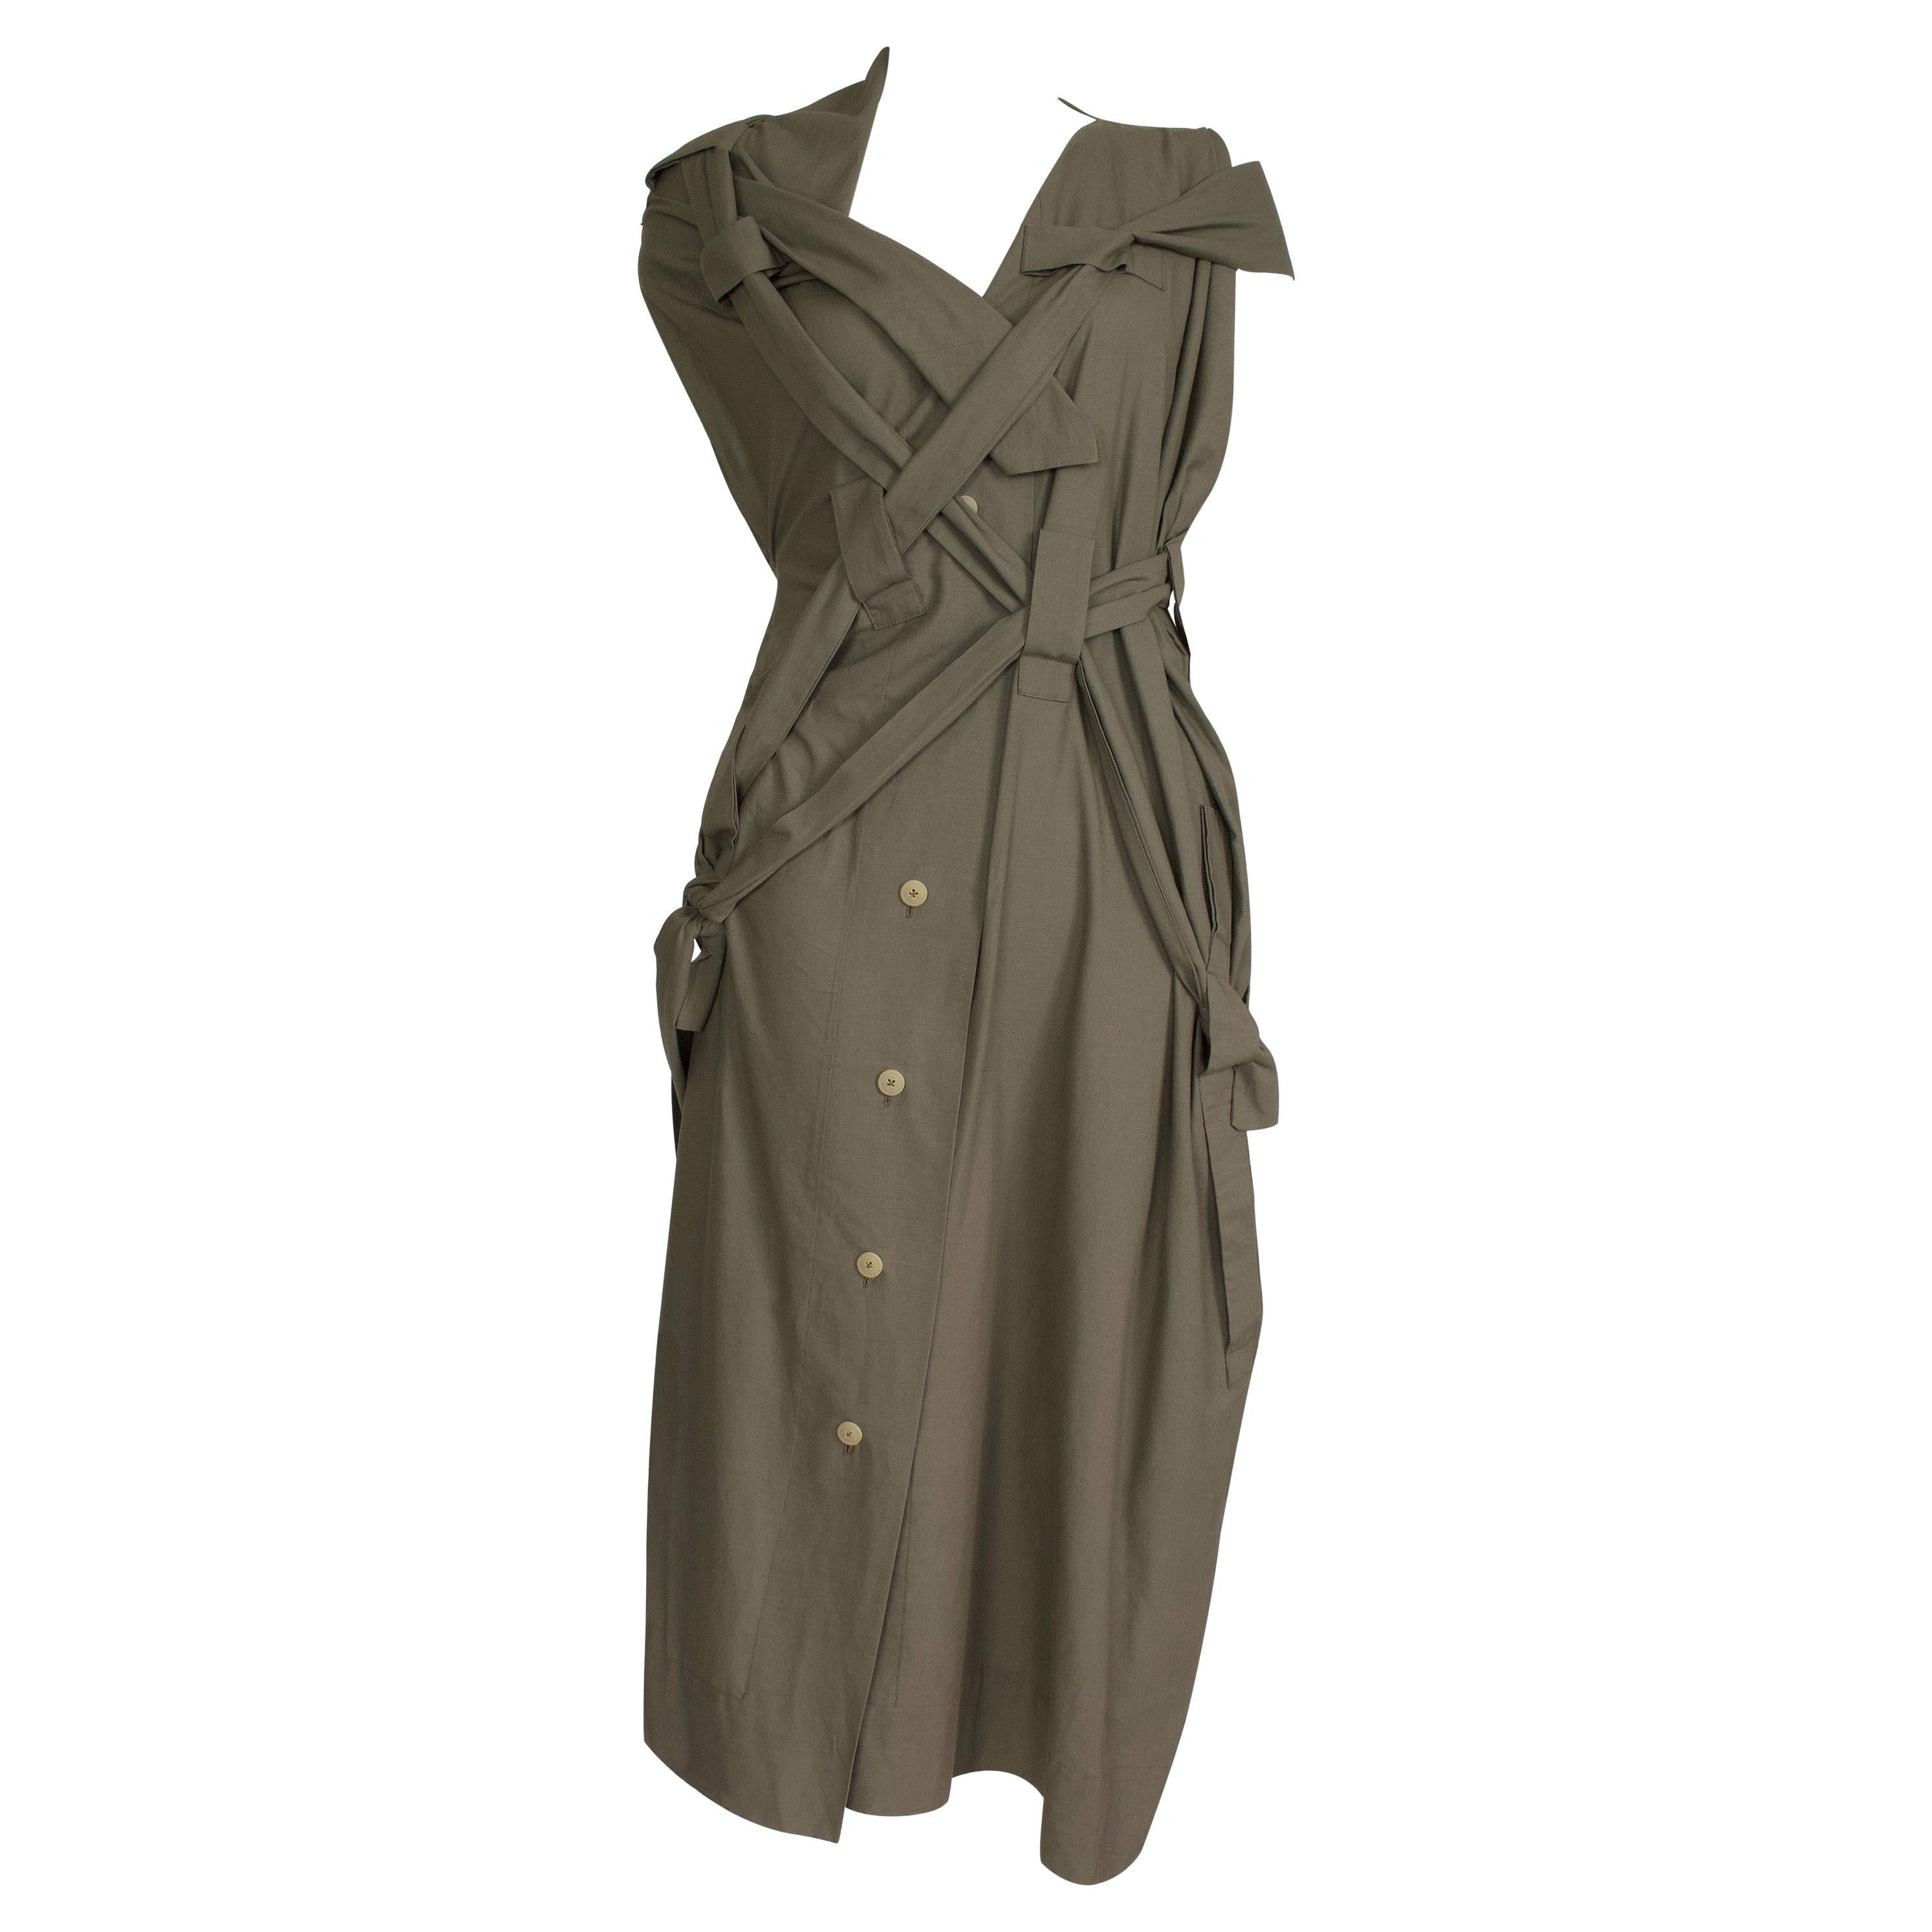 Vivienne Westwood - ‘Bondage’ Dress - Strap & Tie Details - Asymmetric Shoulder 